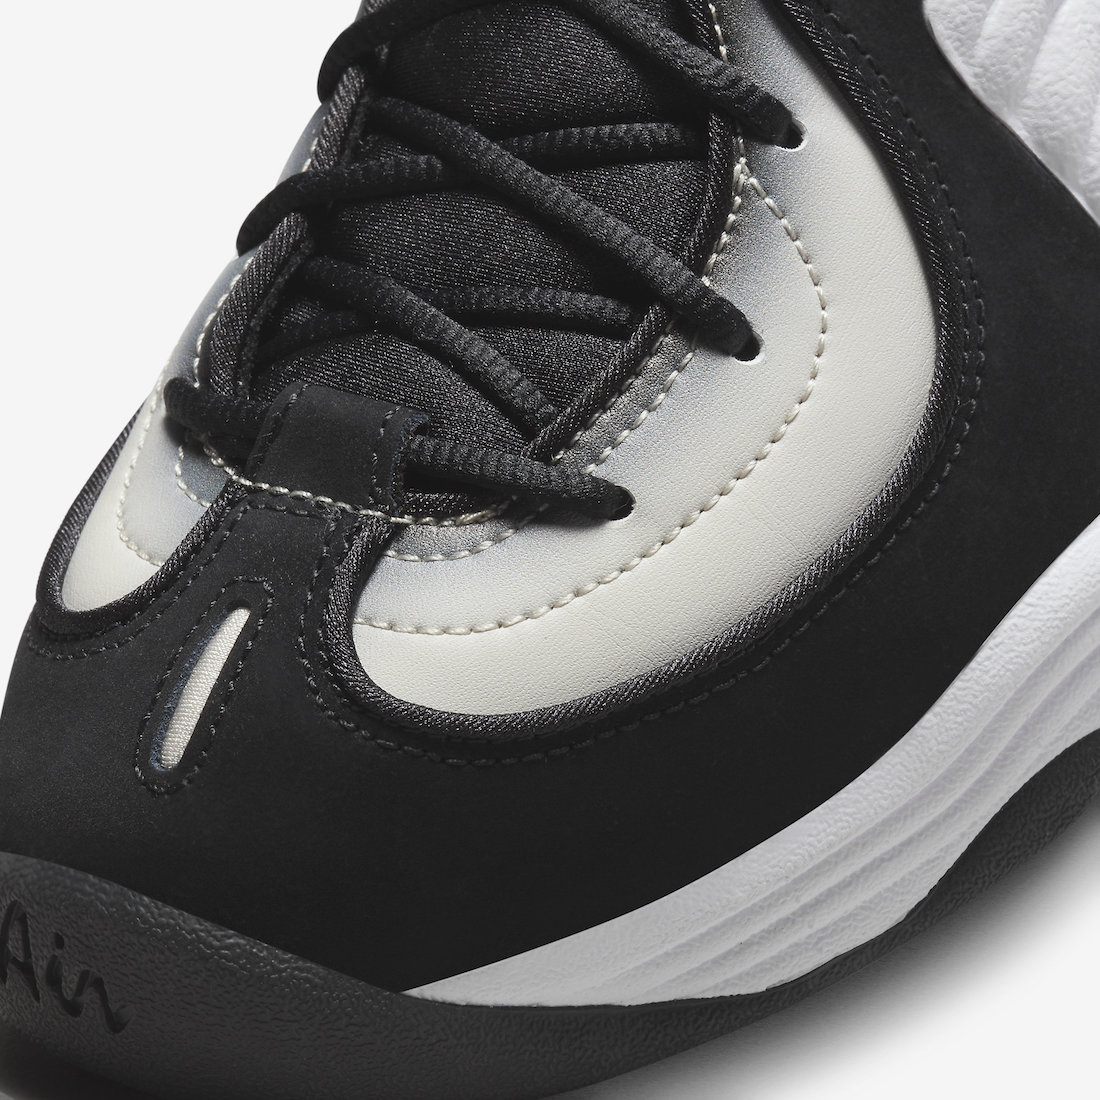 Nike-Air-Penny-2-Panda-White-Black-DZ2549-001-6.jpeg